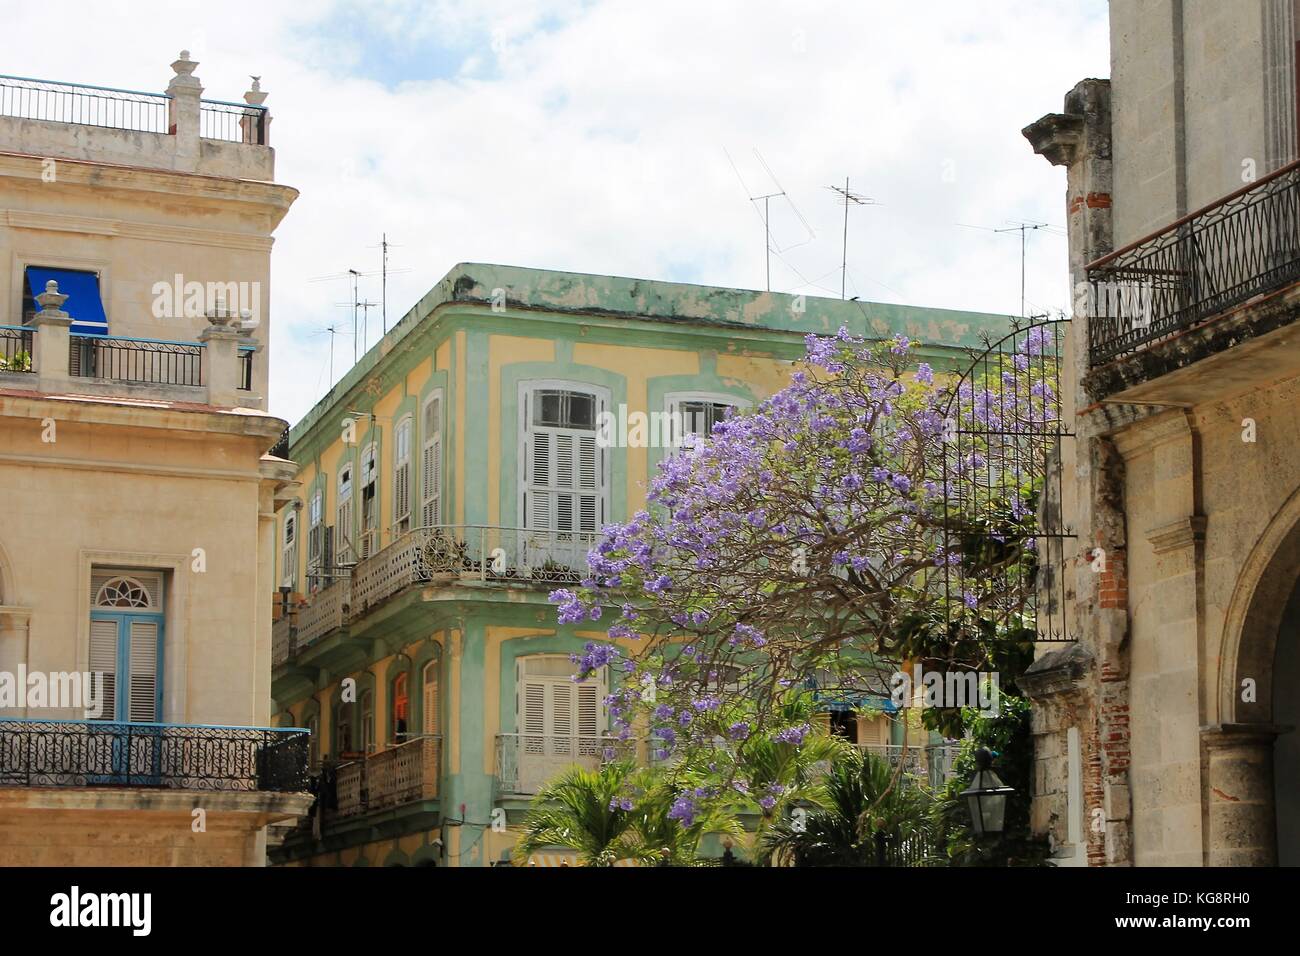 Vieux néo-classique et des bâtiments de style espagnol dans le Vieux Carré, La Havane, Cuba. Sont également visibles les palmiers et plantes tropicales. Banque D'Images